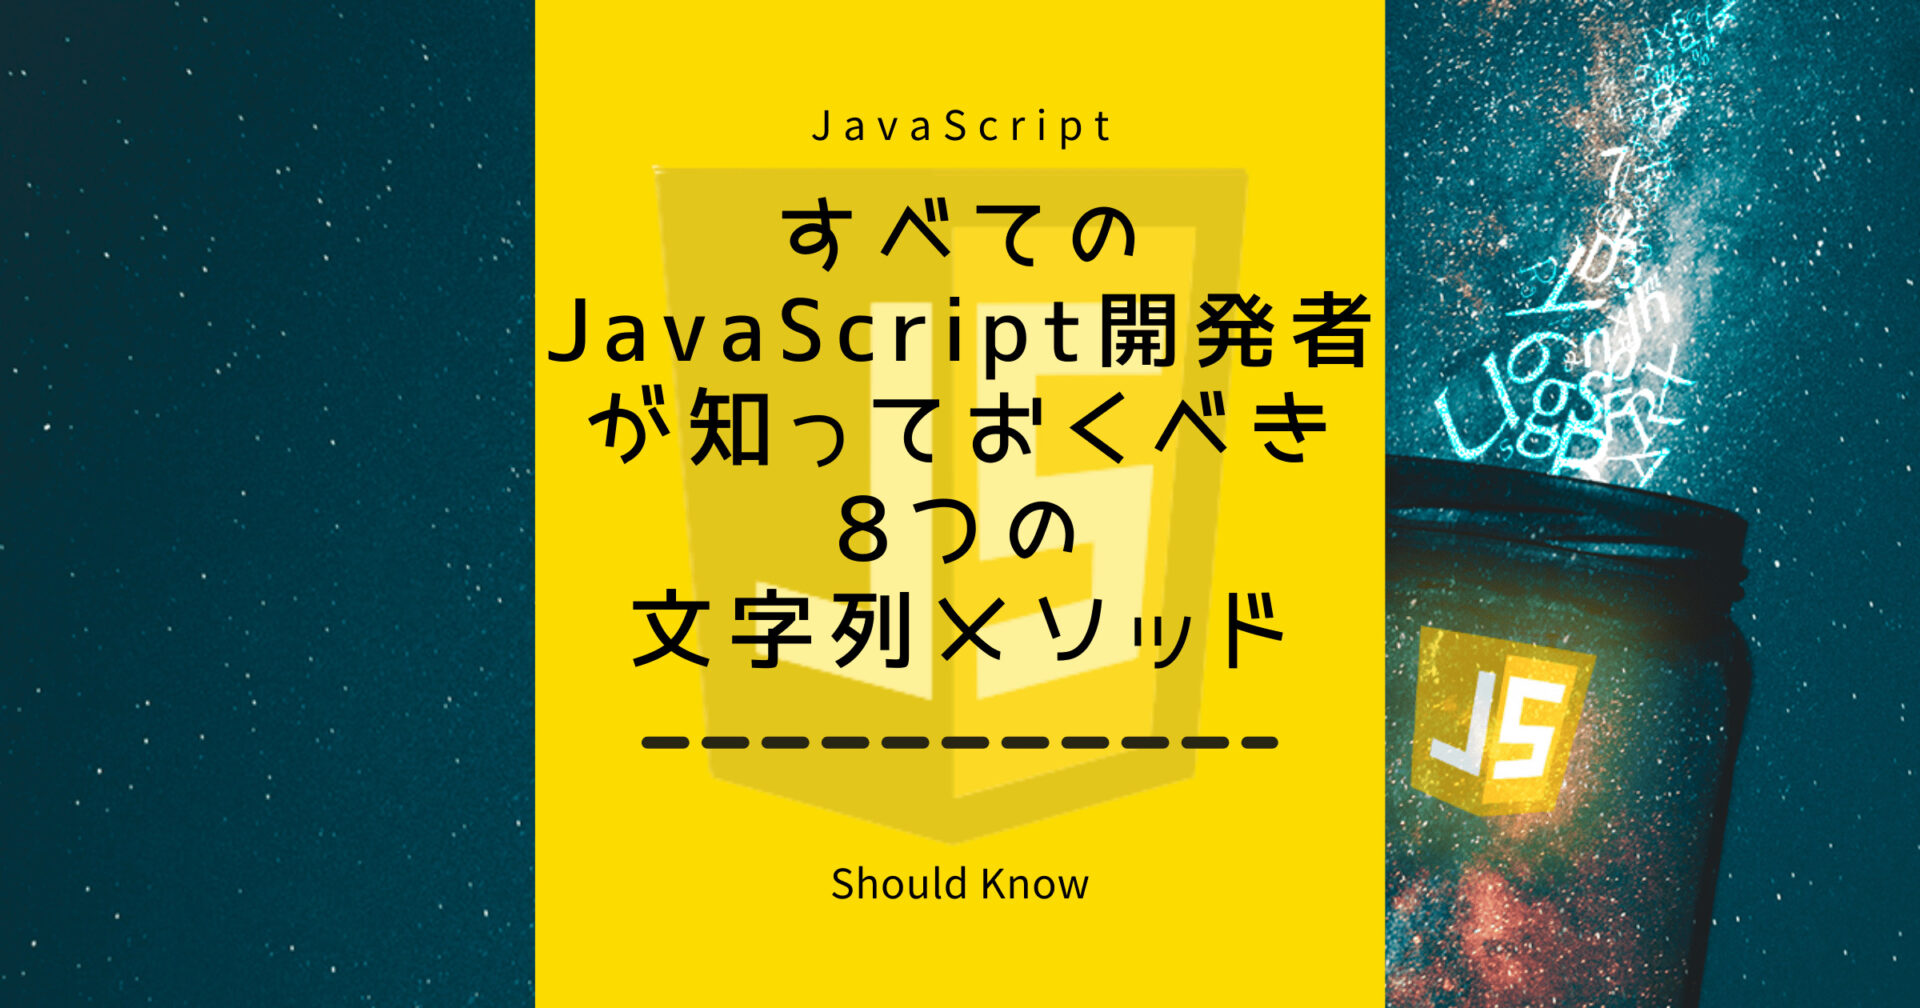 すべてのJavaScript開発者が知っておくべき8つの文字列メソッド